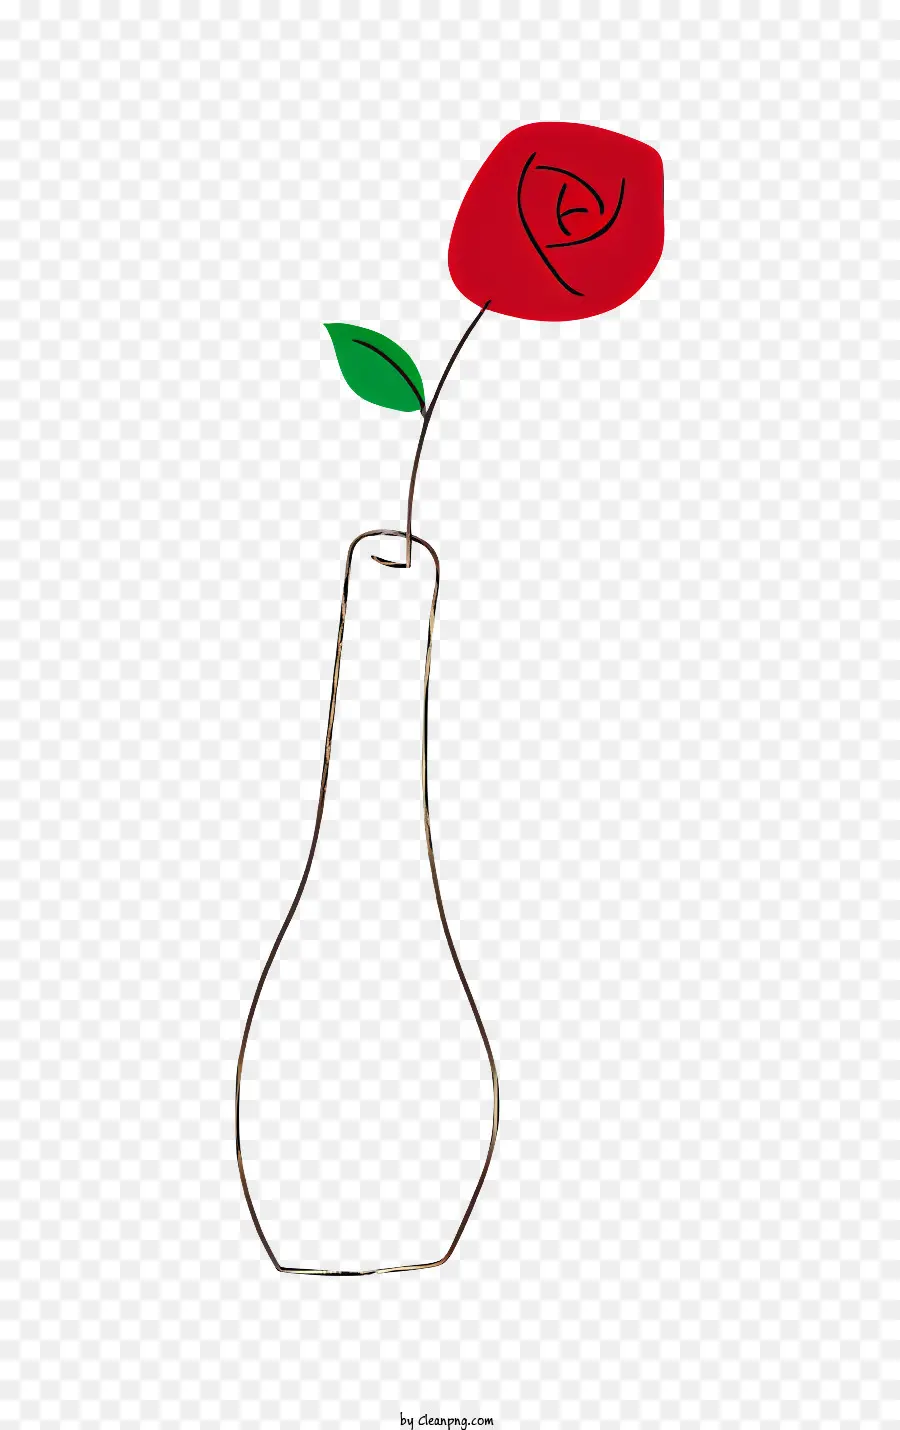 rote rose - Rote Rose in Vase auf schwarzem Hintergrund